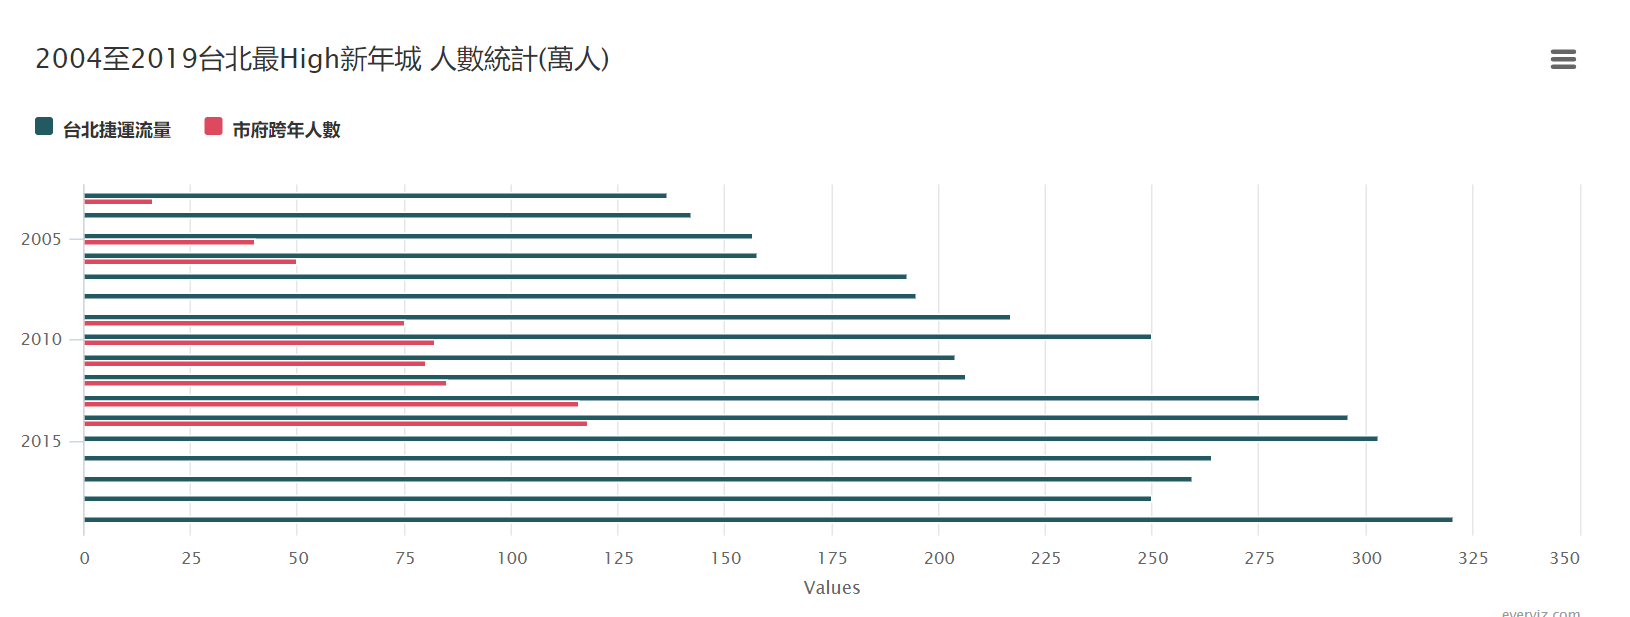 2004至2019台北最High新年城 人數統計(萬人)